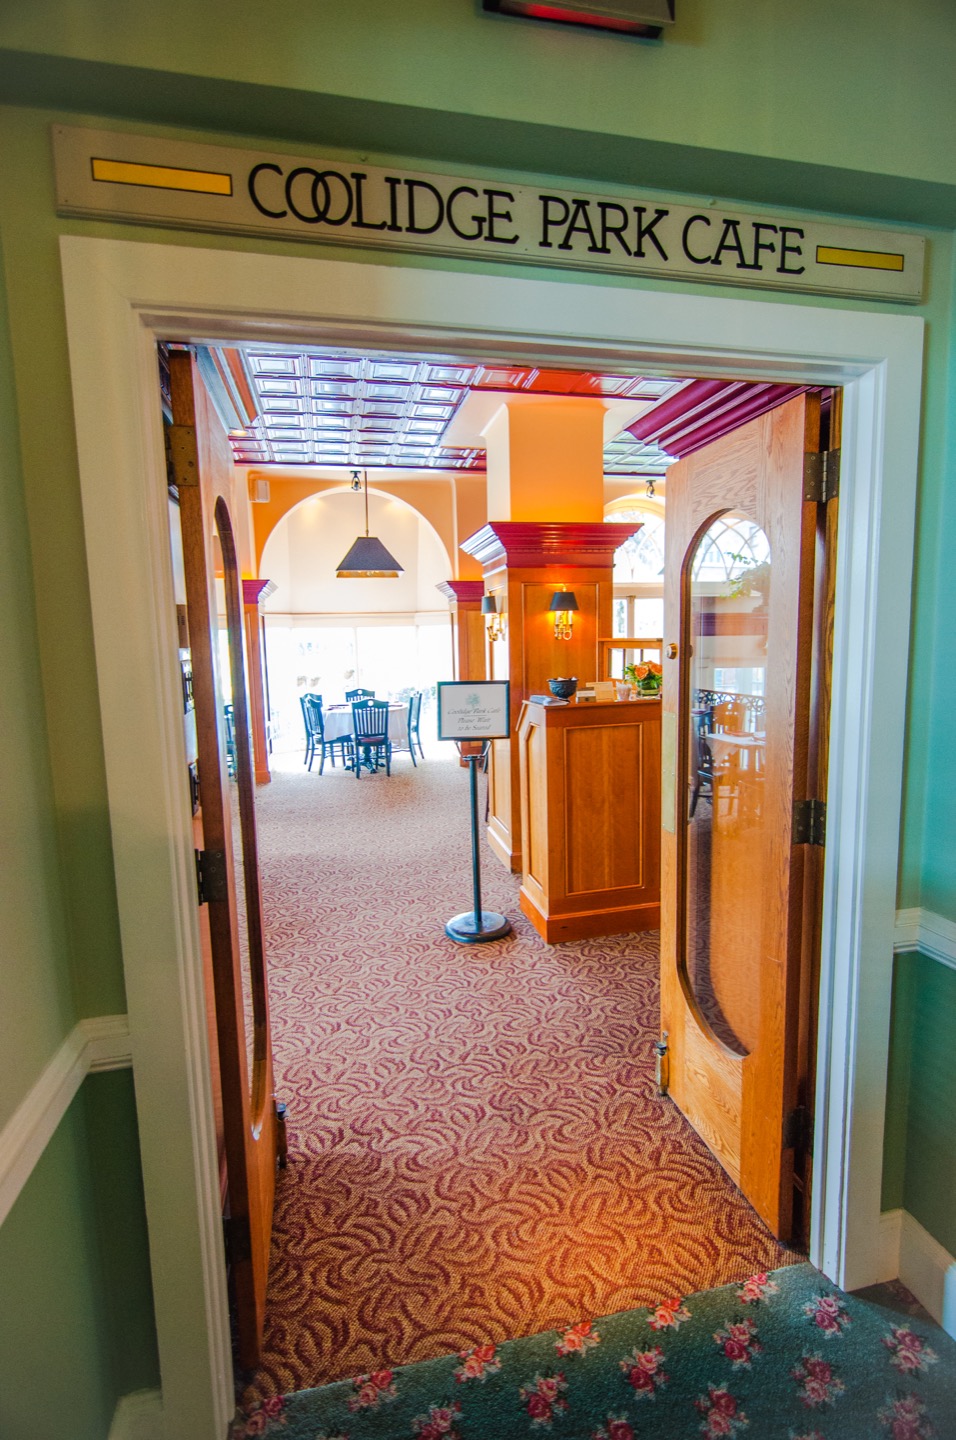 Coolidge Park Cafe inner entrance